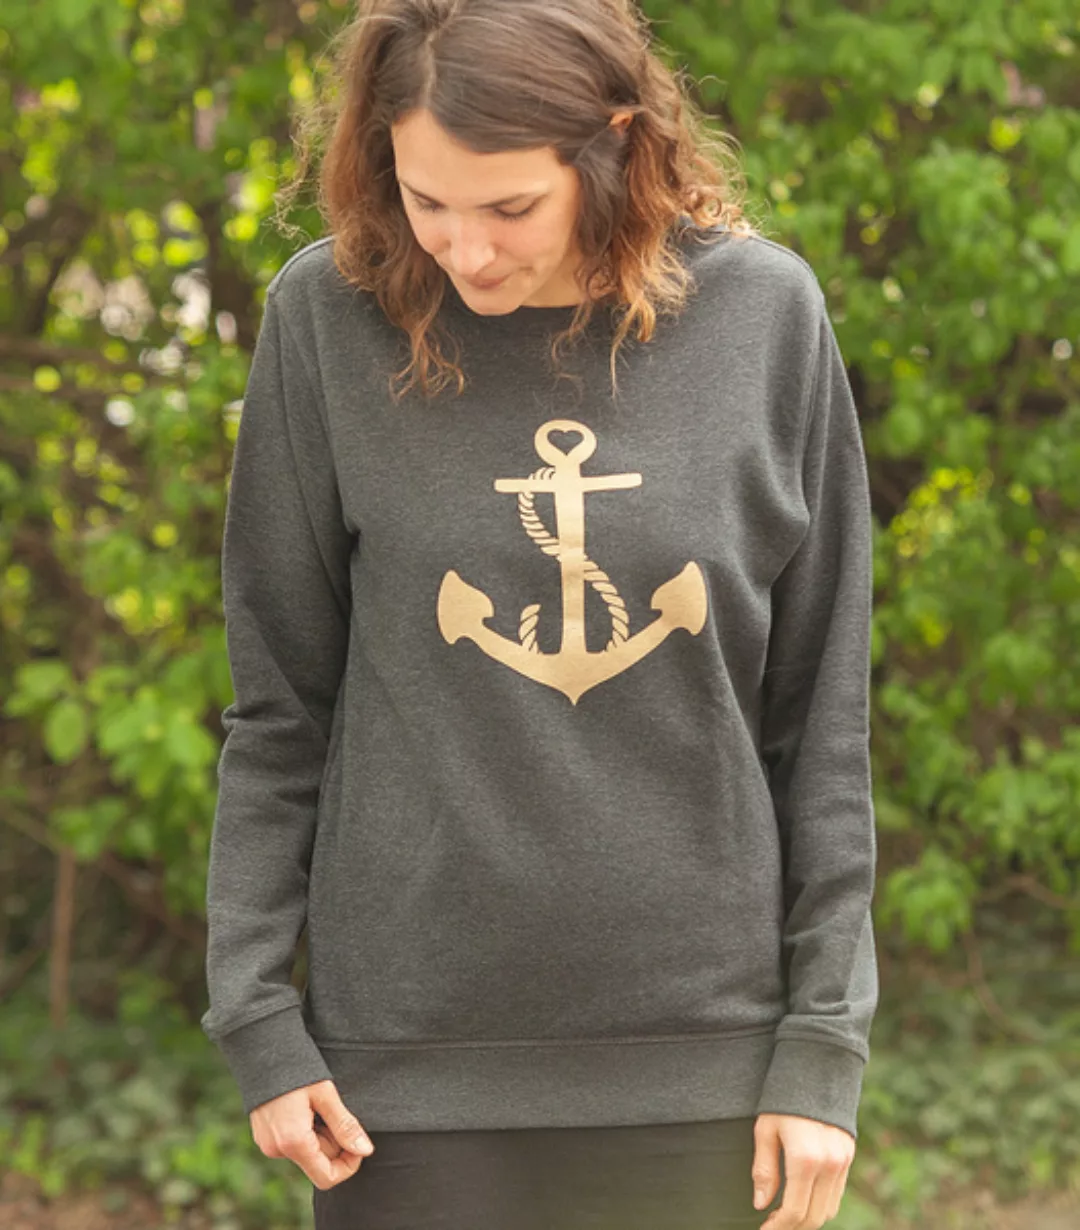 Päfjes Goldener Anker Unisex Sweater - Dark Heather Grey günstig online kaufen